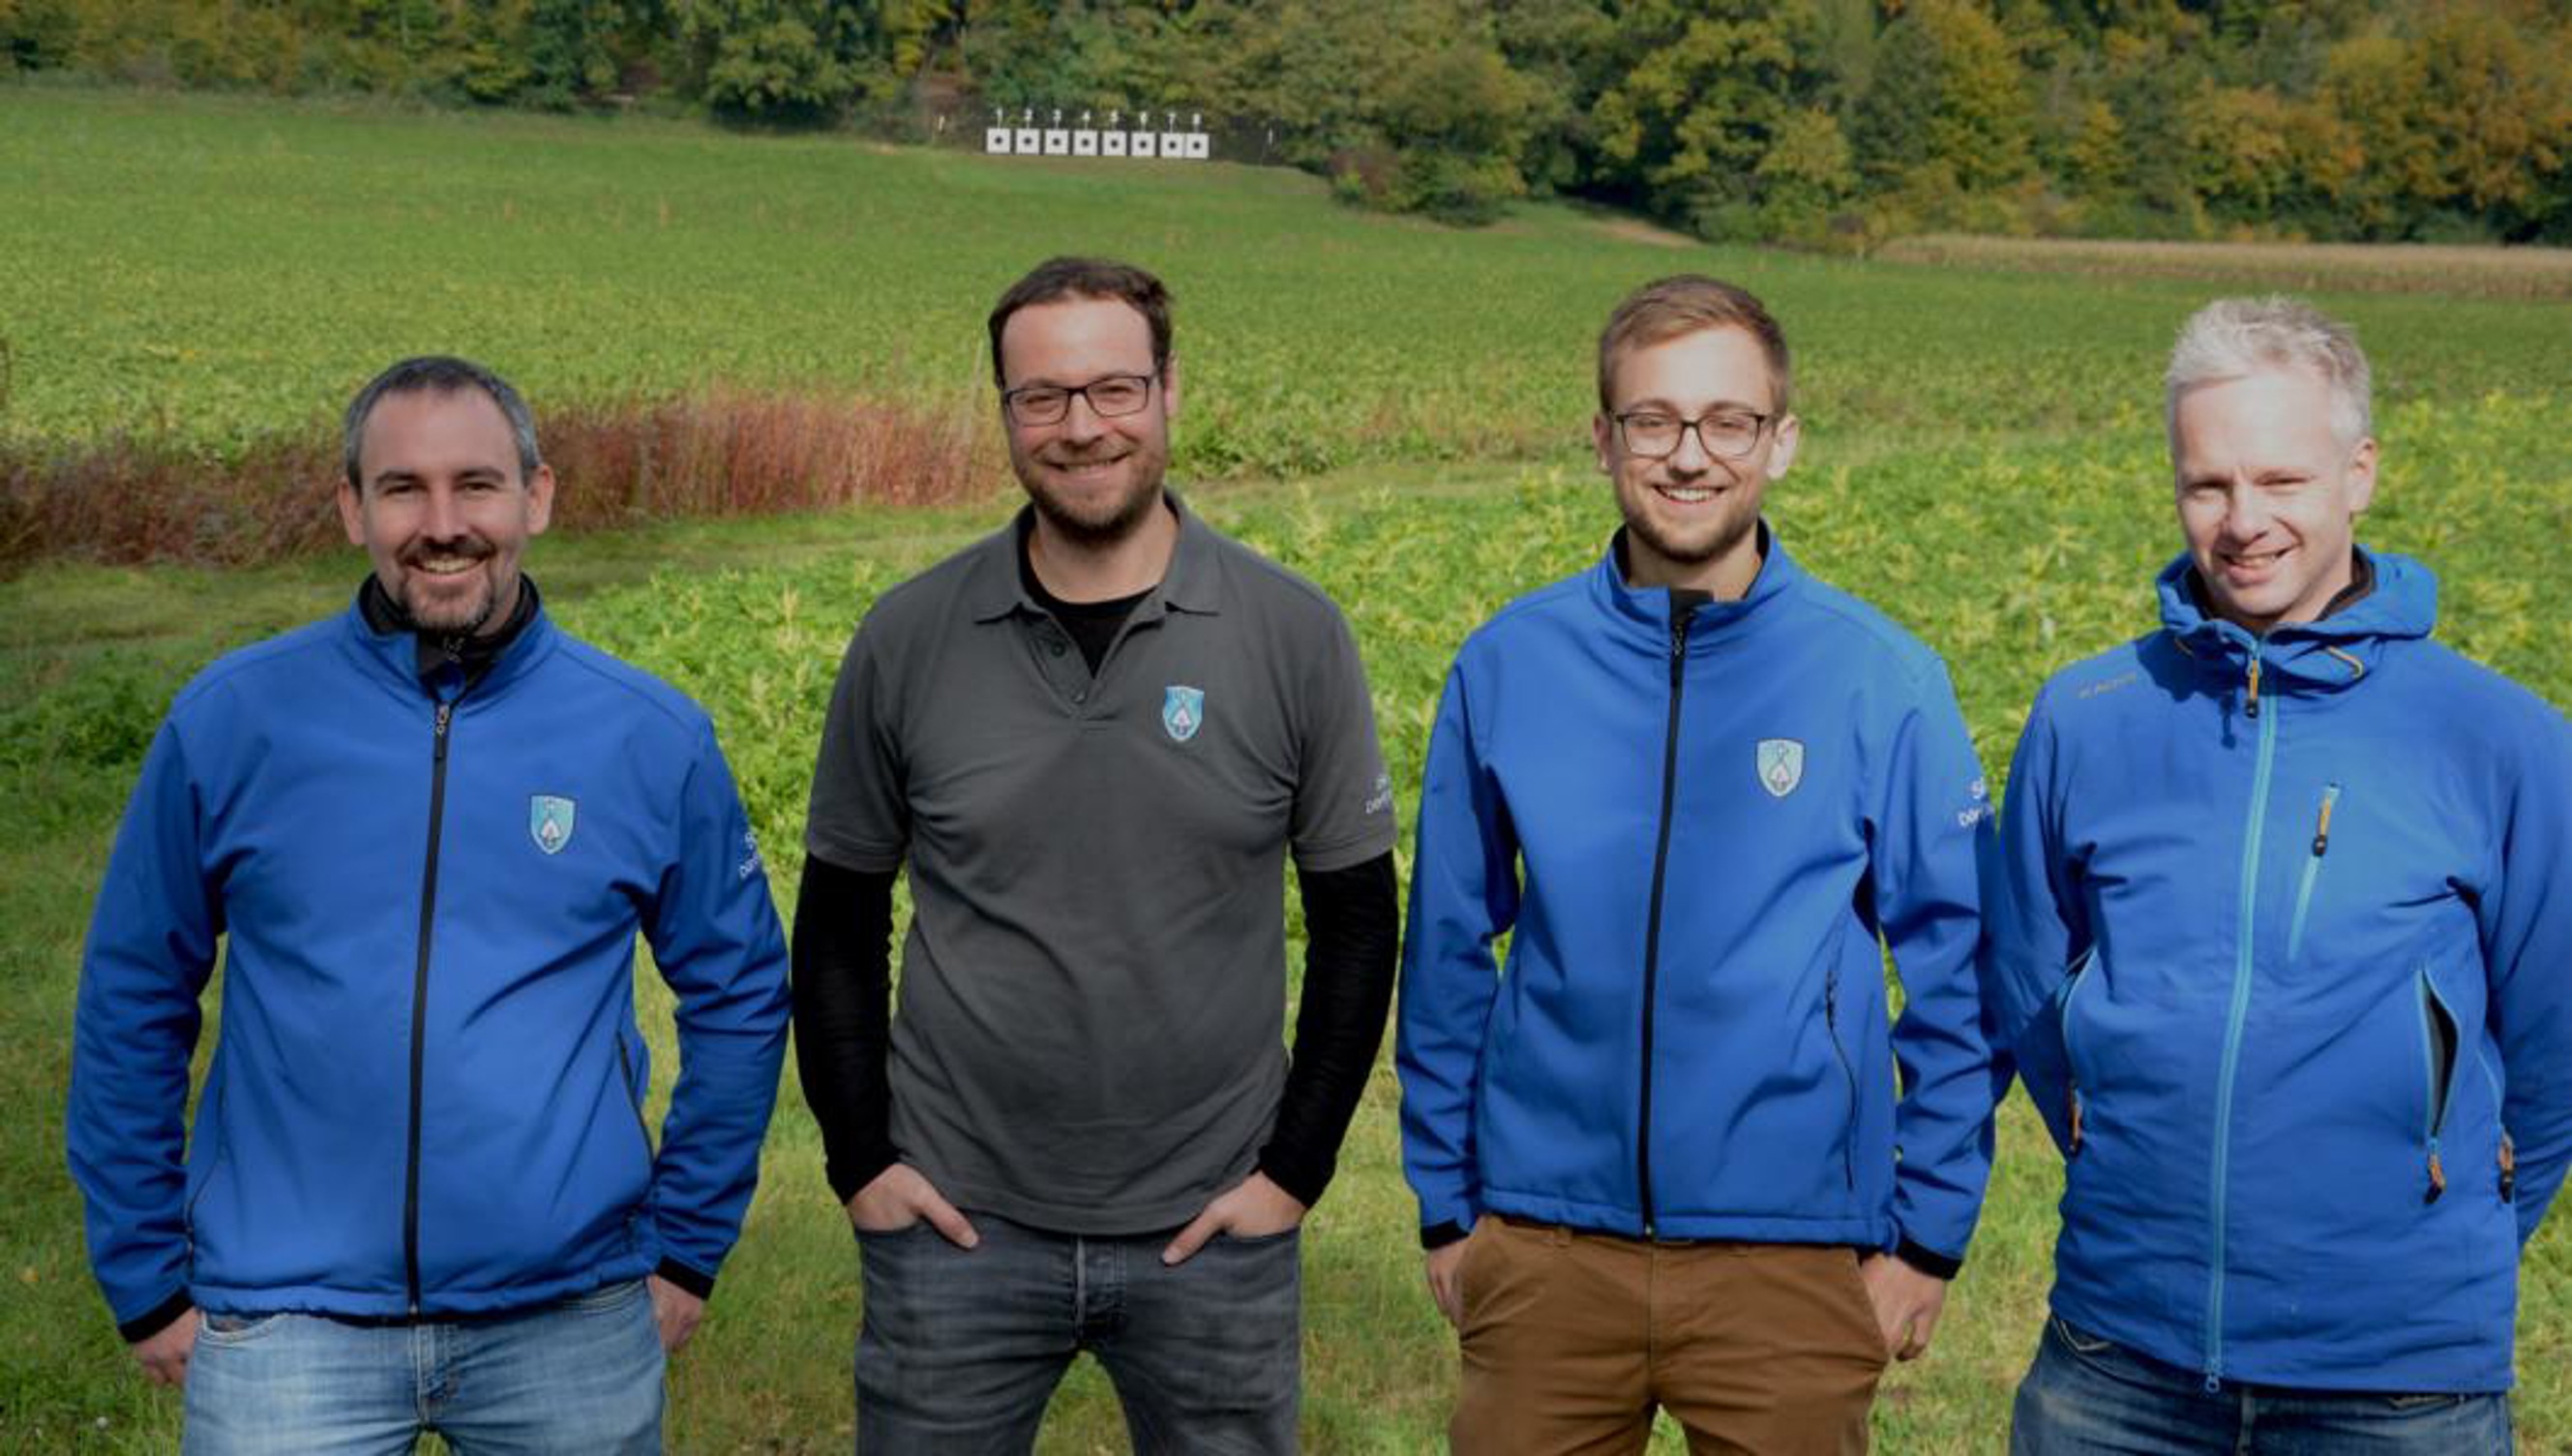 Die Siegermannschaft aus Dörflingen: v.l.n.r.: Martin Schwizer, Christian "Tiger" Risch, Marco Keller und Rico Blanz.